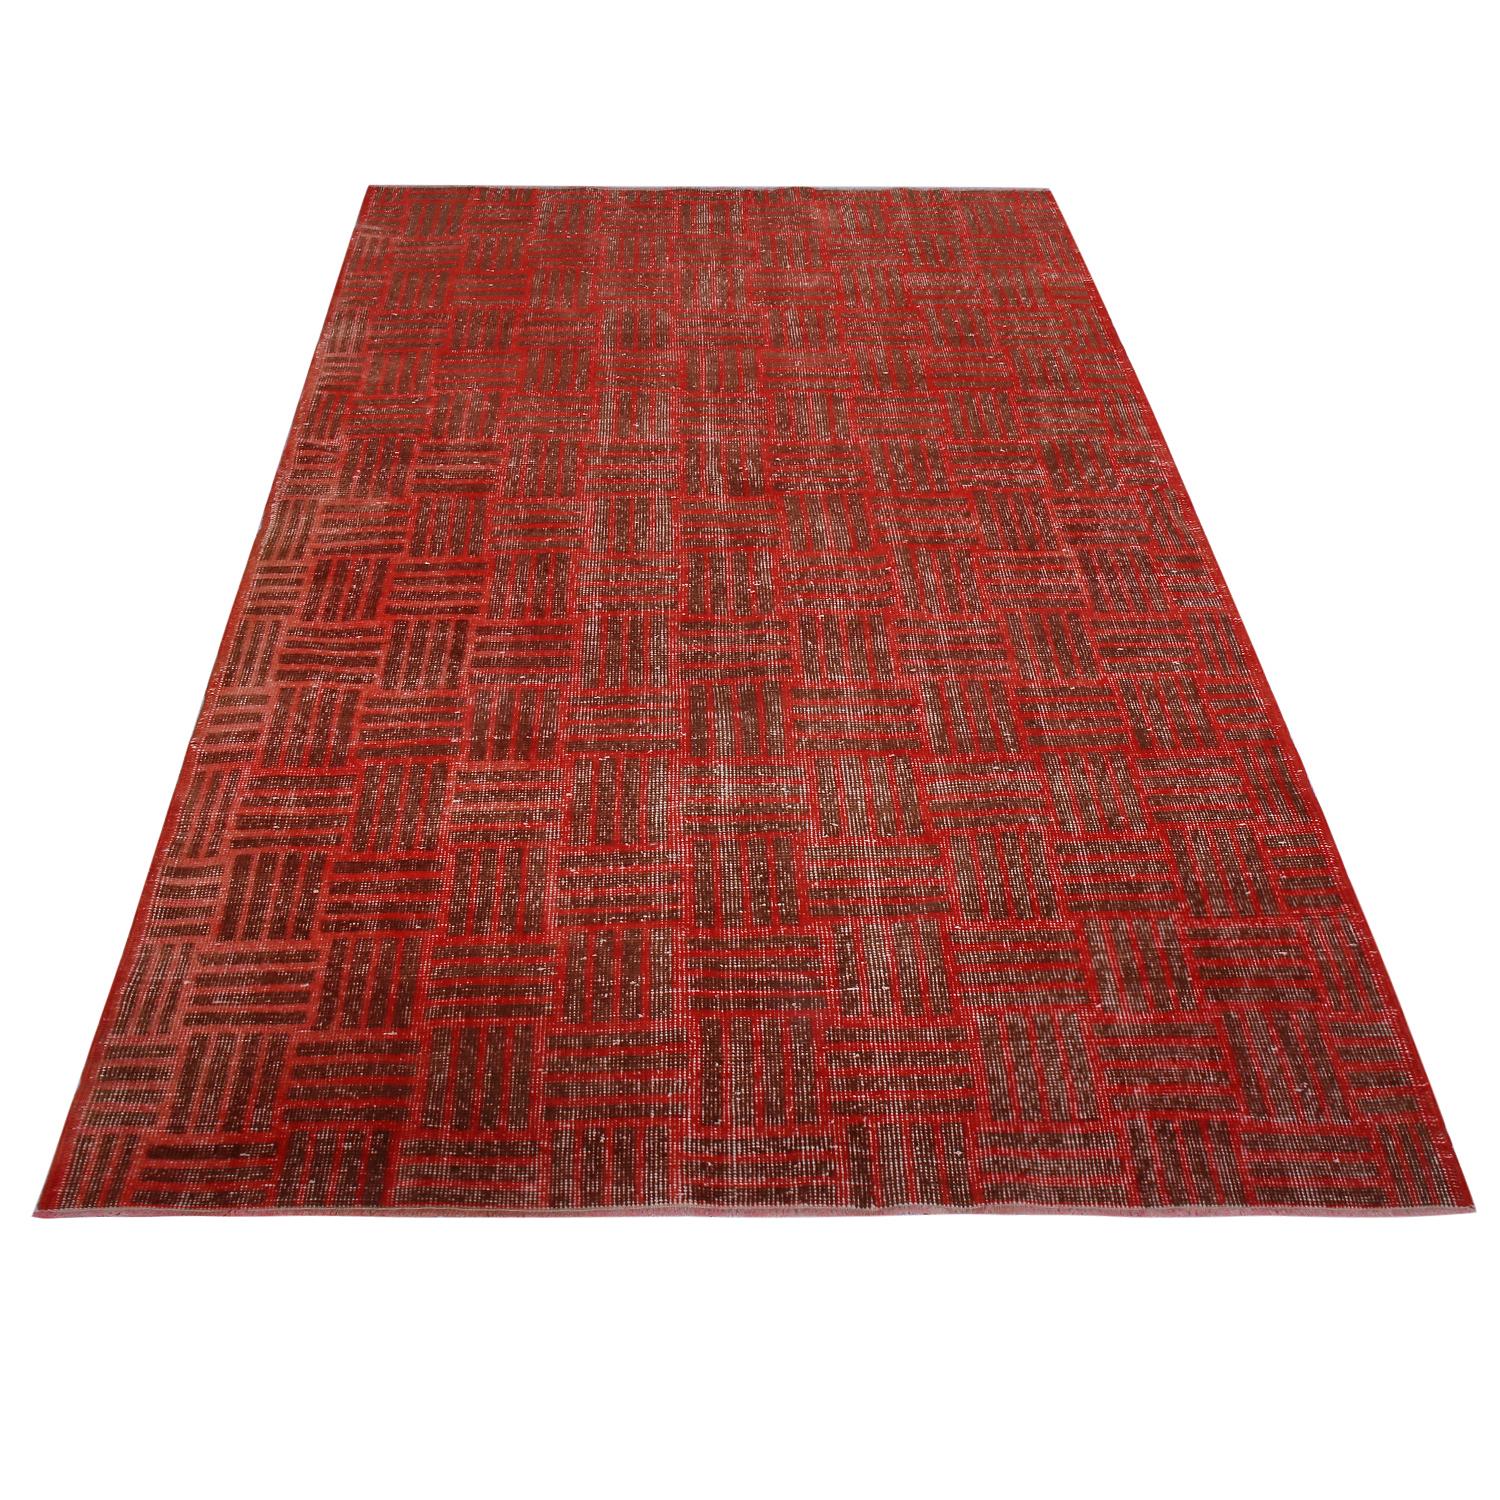 Mid-Century Modern Vintage Midcentury Red and Brown Geometric Wool Rug